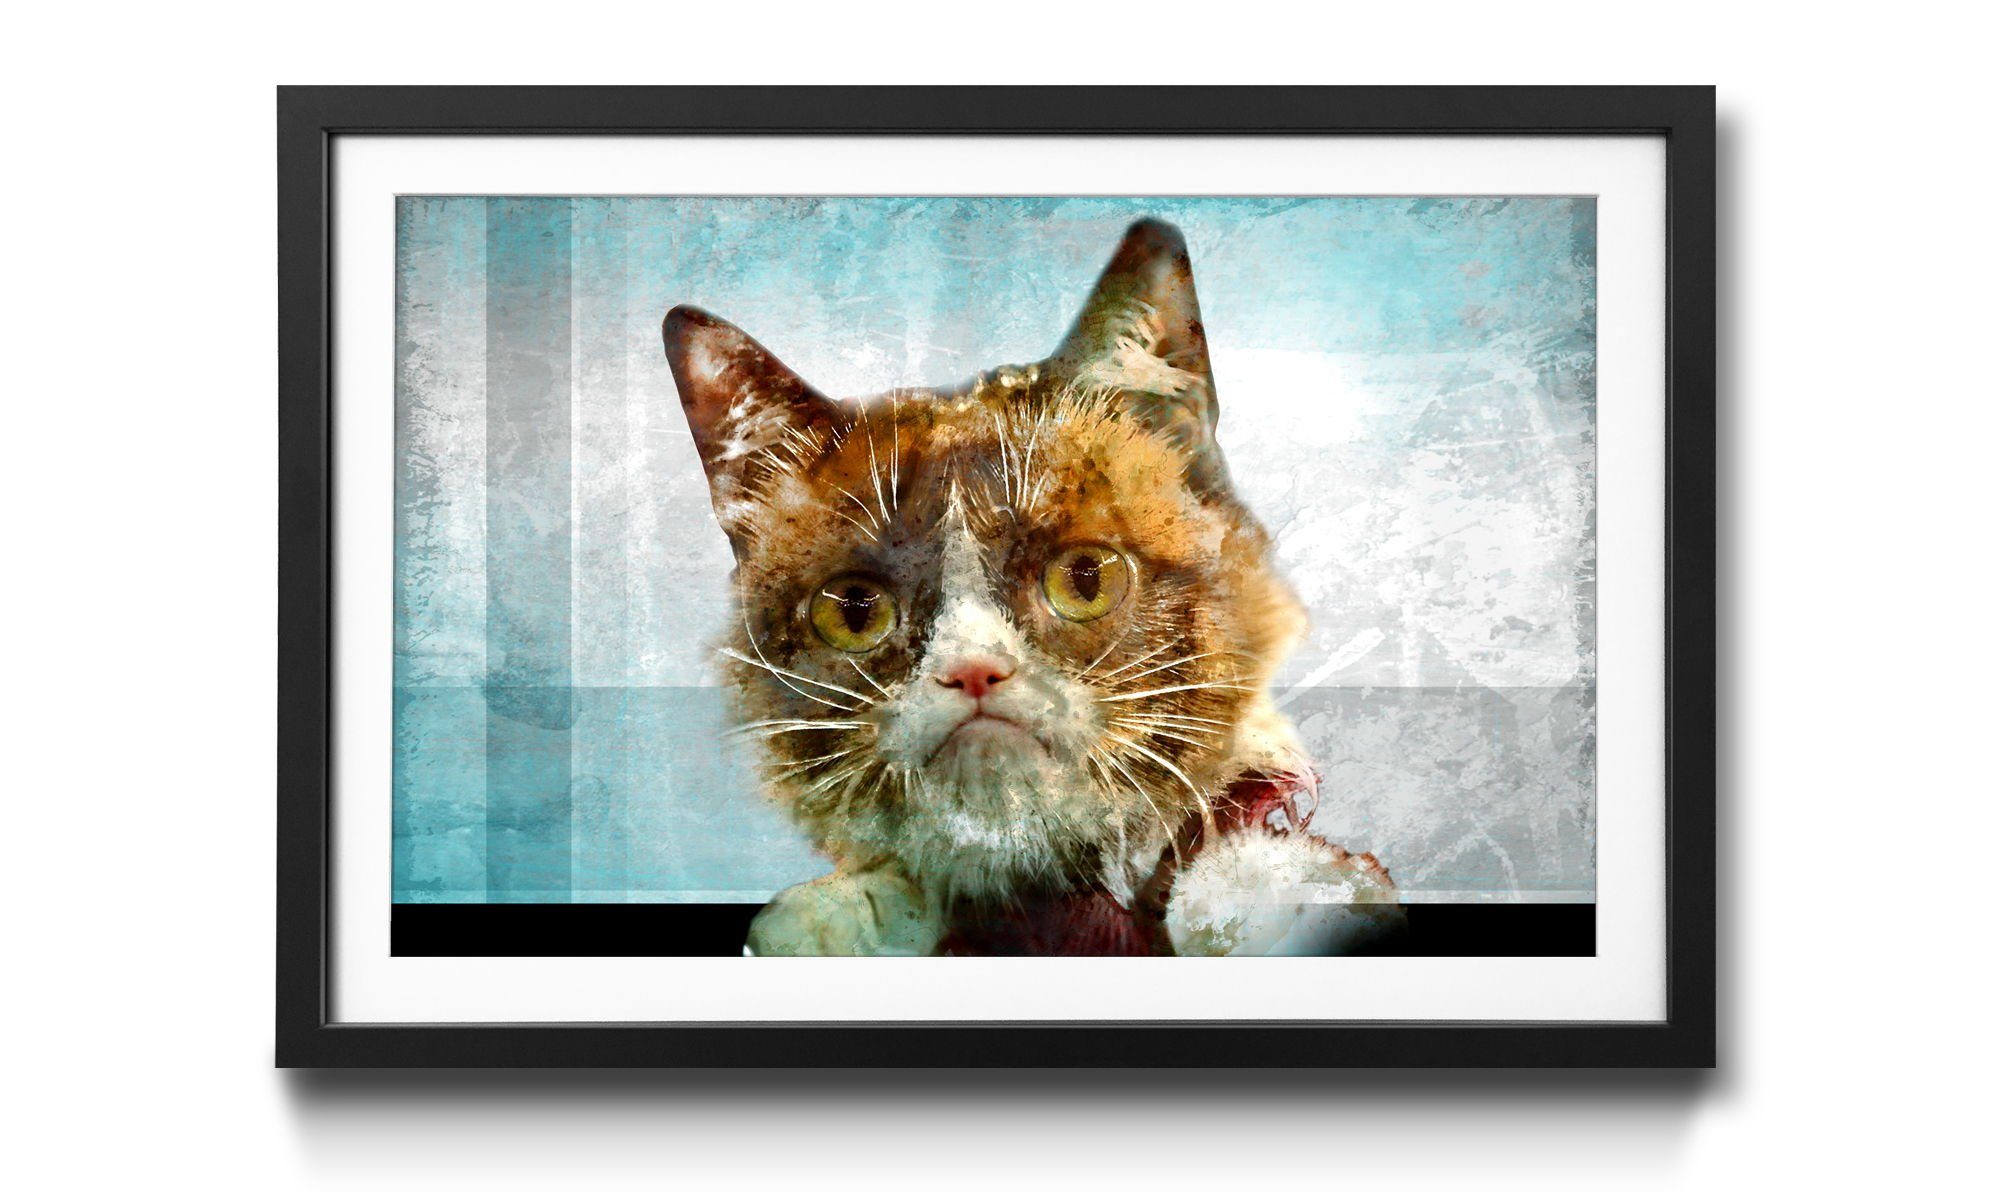 WandbilderXXL Kunstdruck El Grump, Katze, Wandbild, in 4 Größen erhältlich